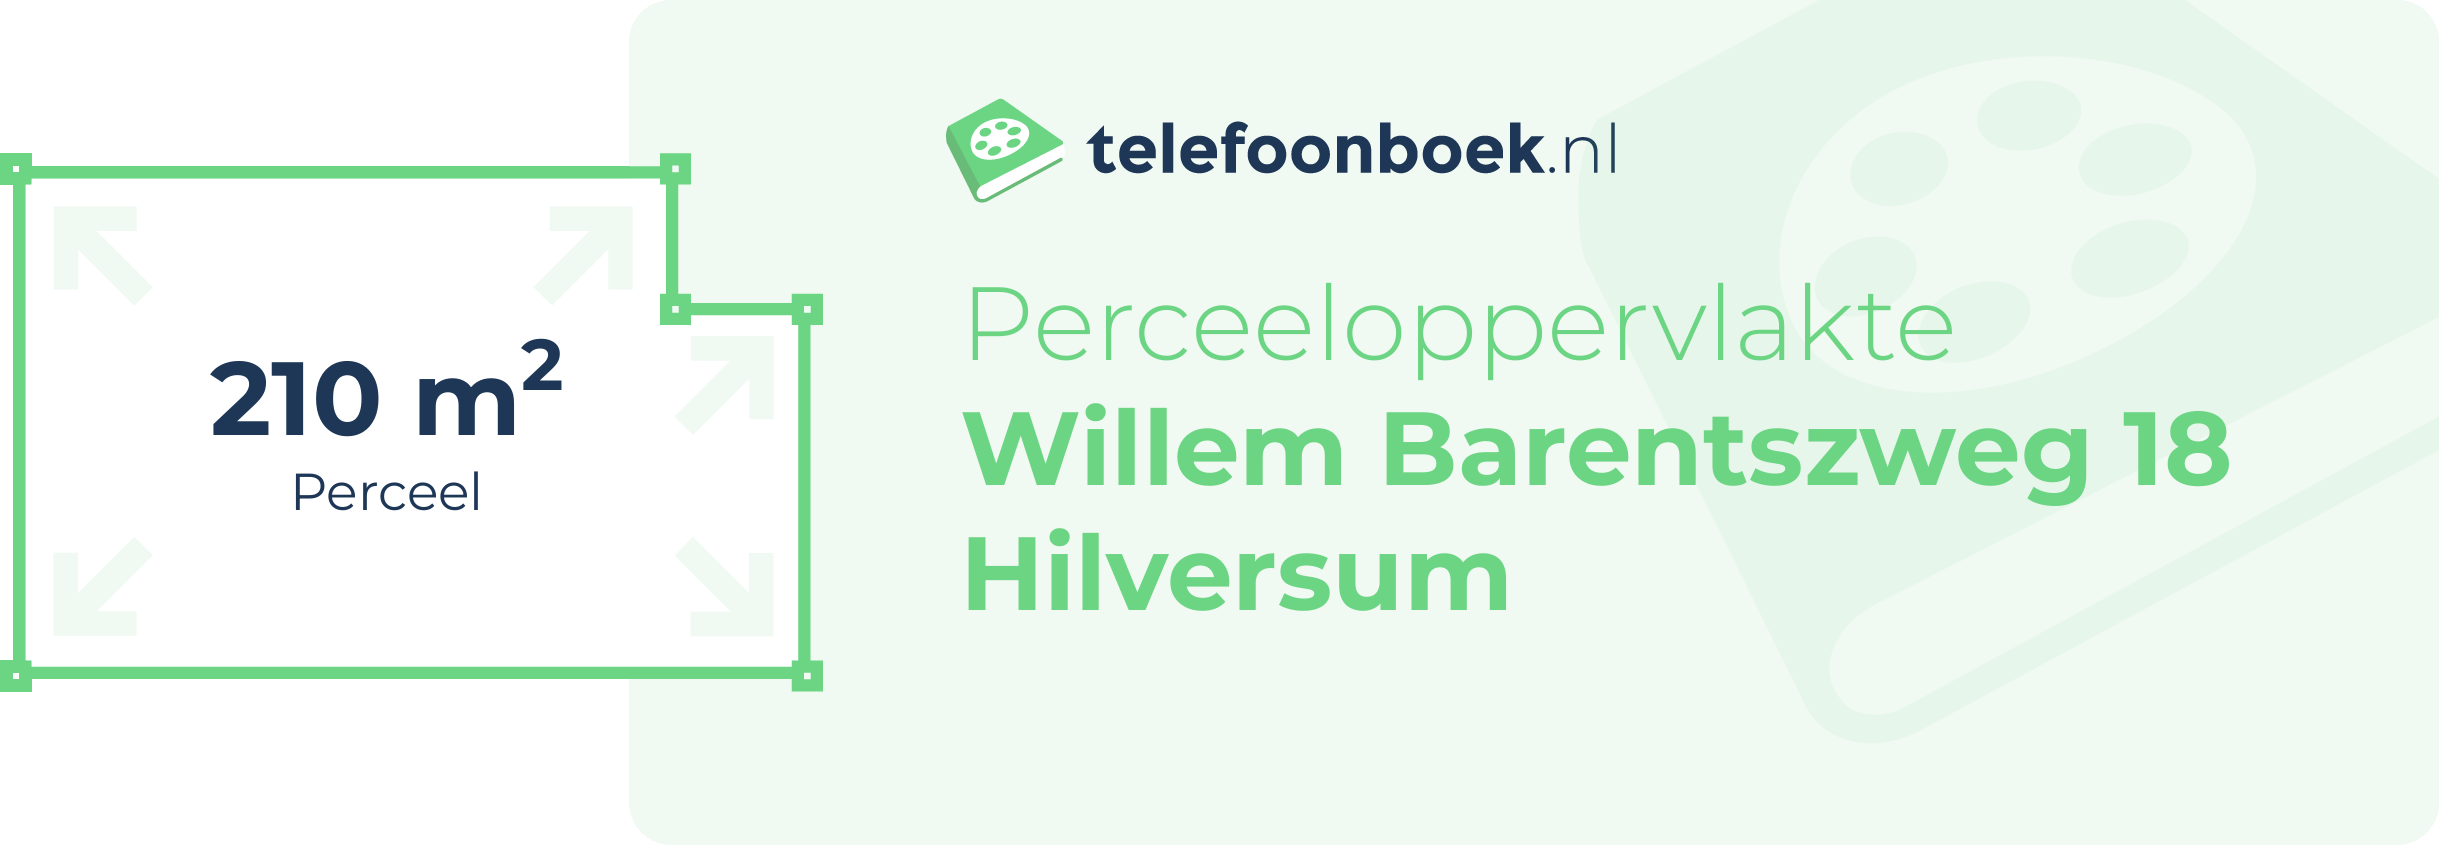 Perceeloppervlakte Willem Barentszweg 18 Hilversum